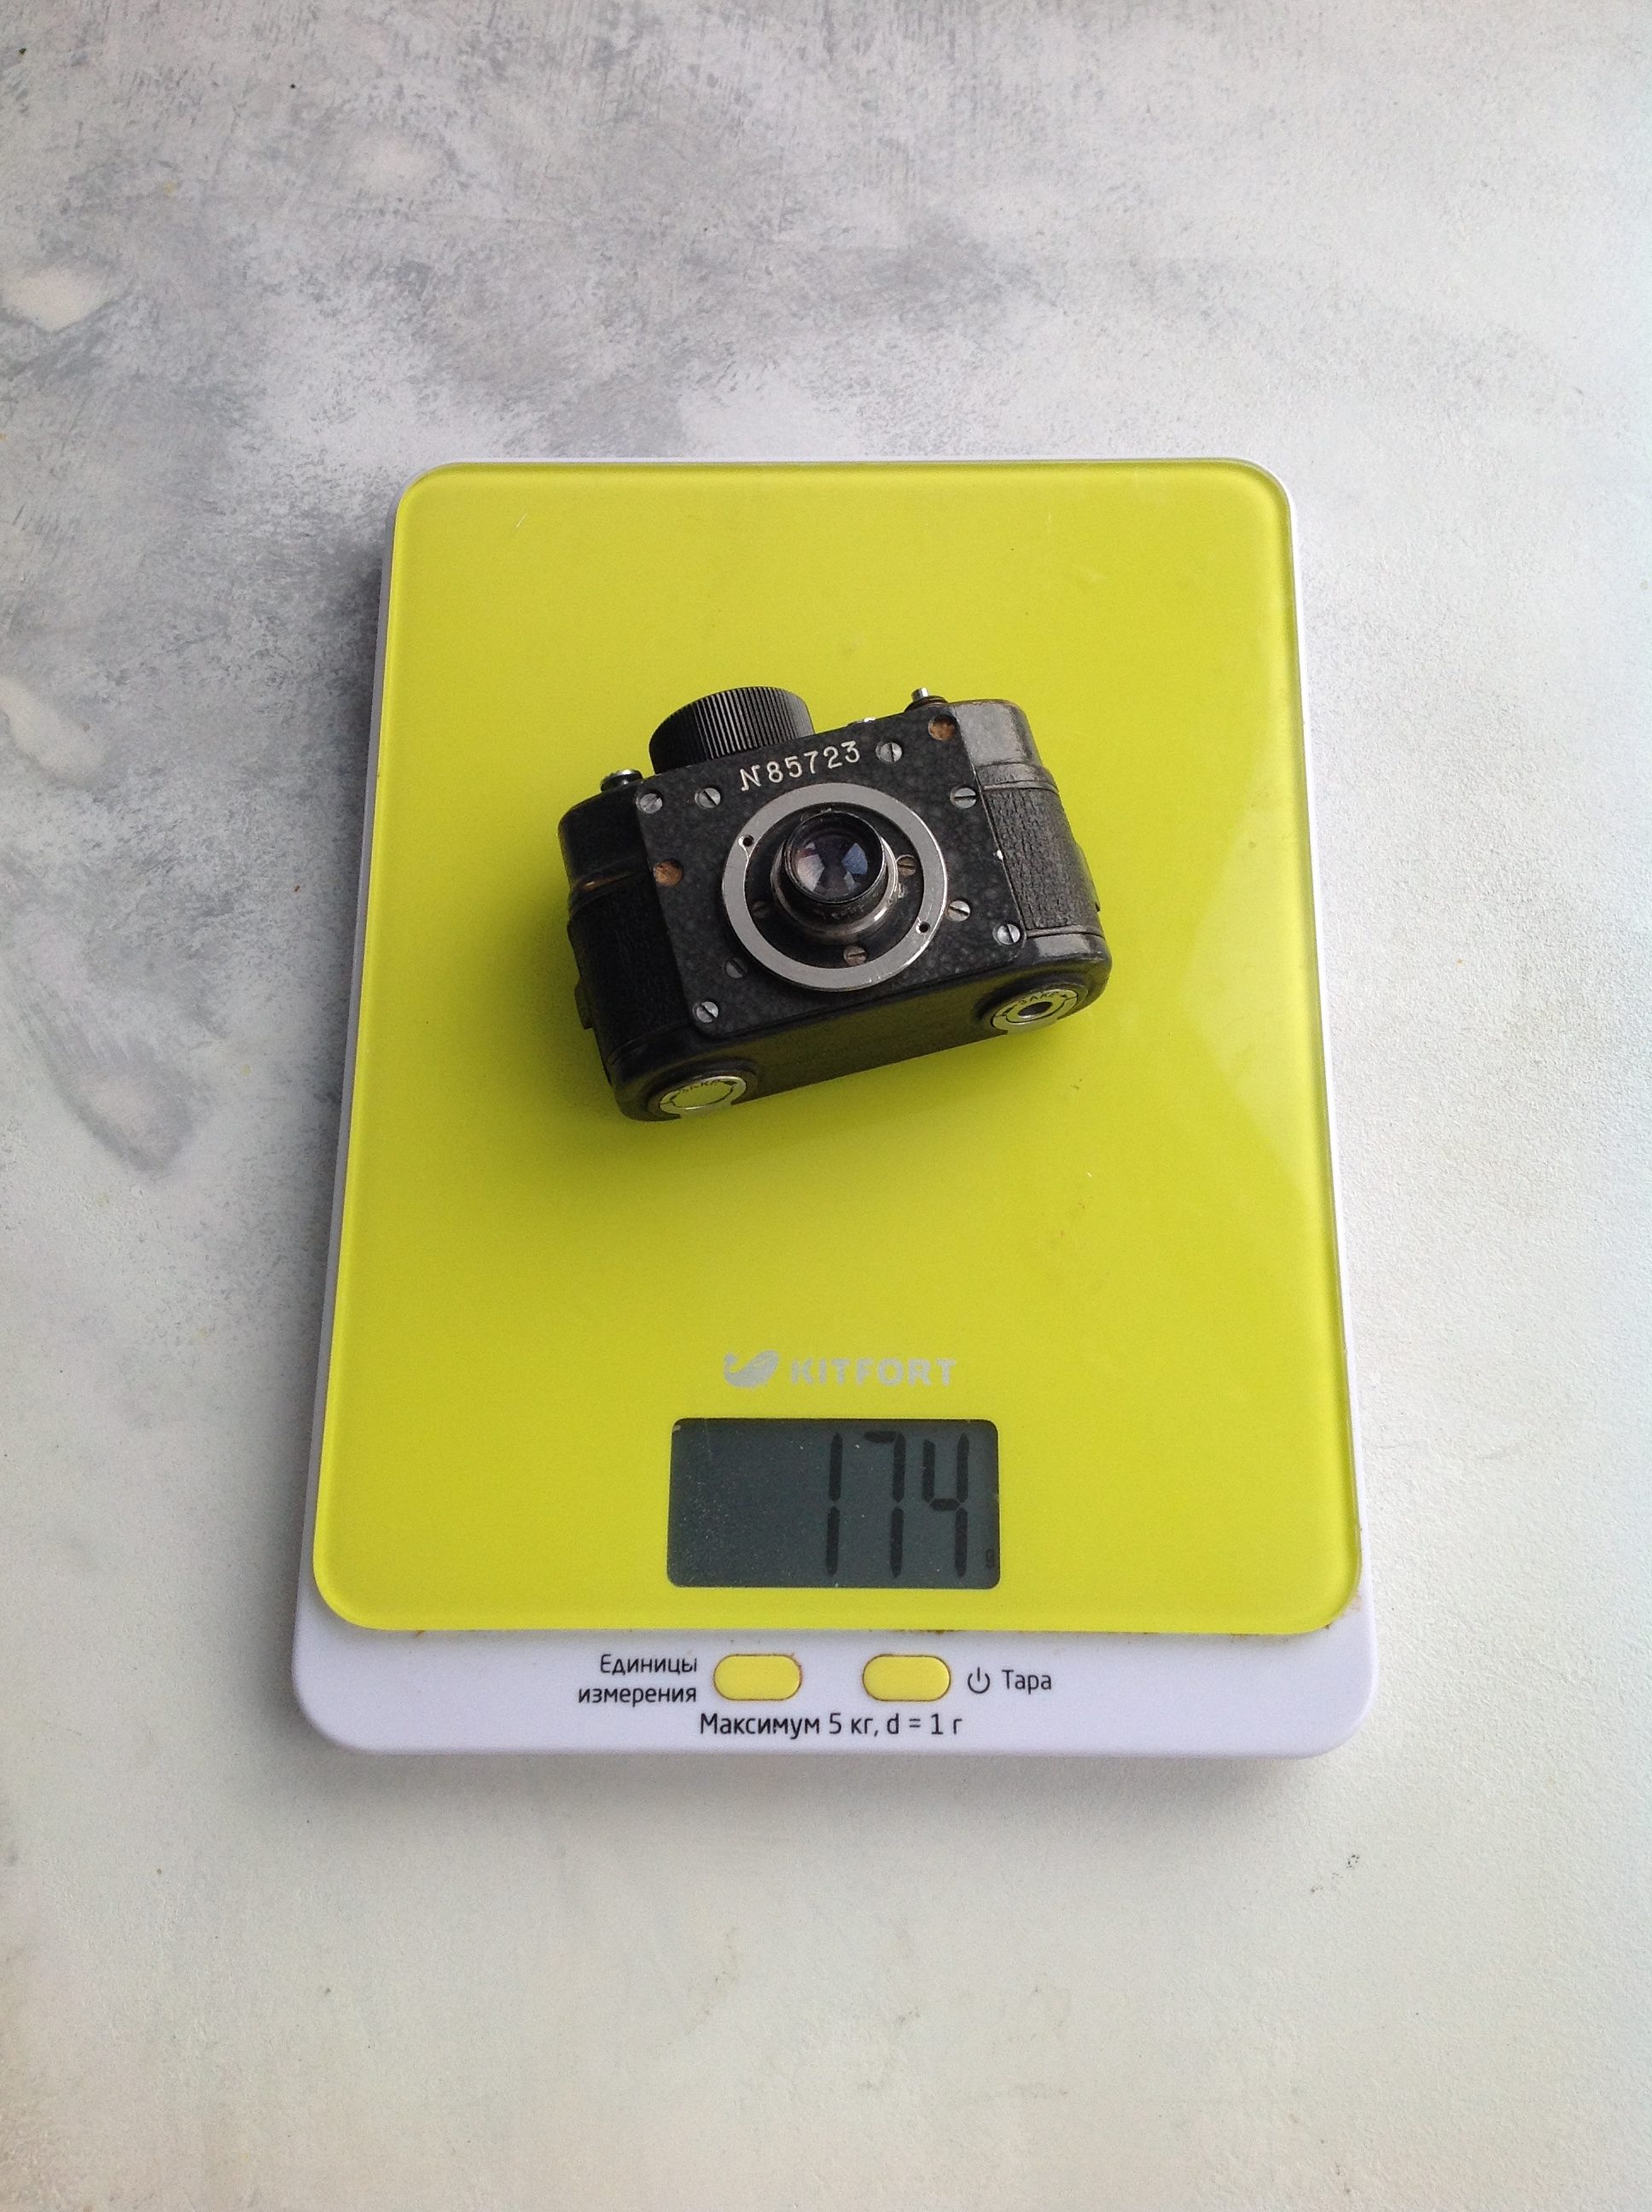 一个小型间谍相机的重量